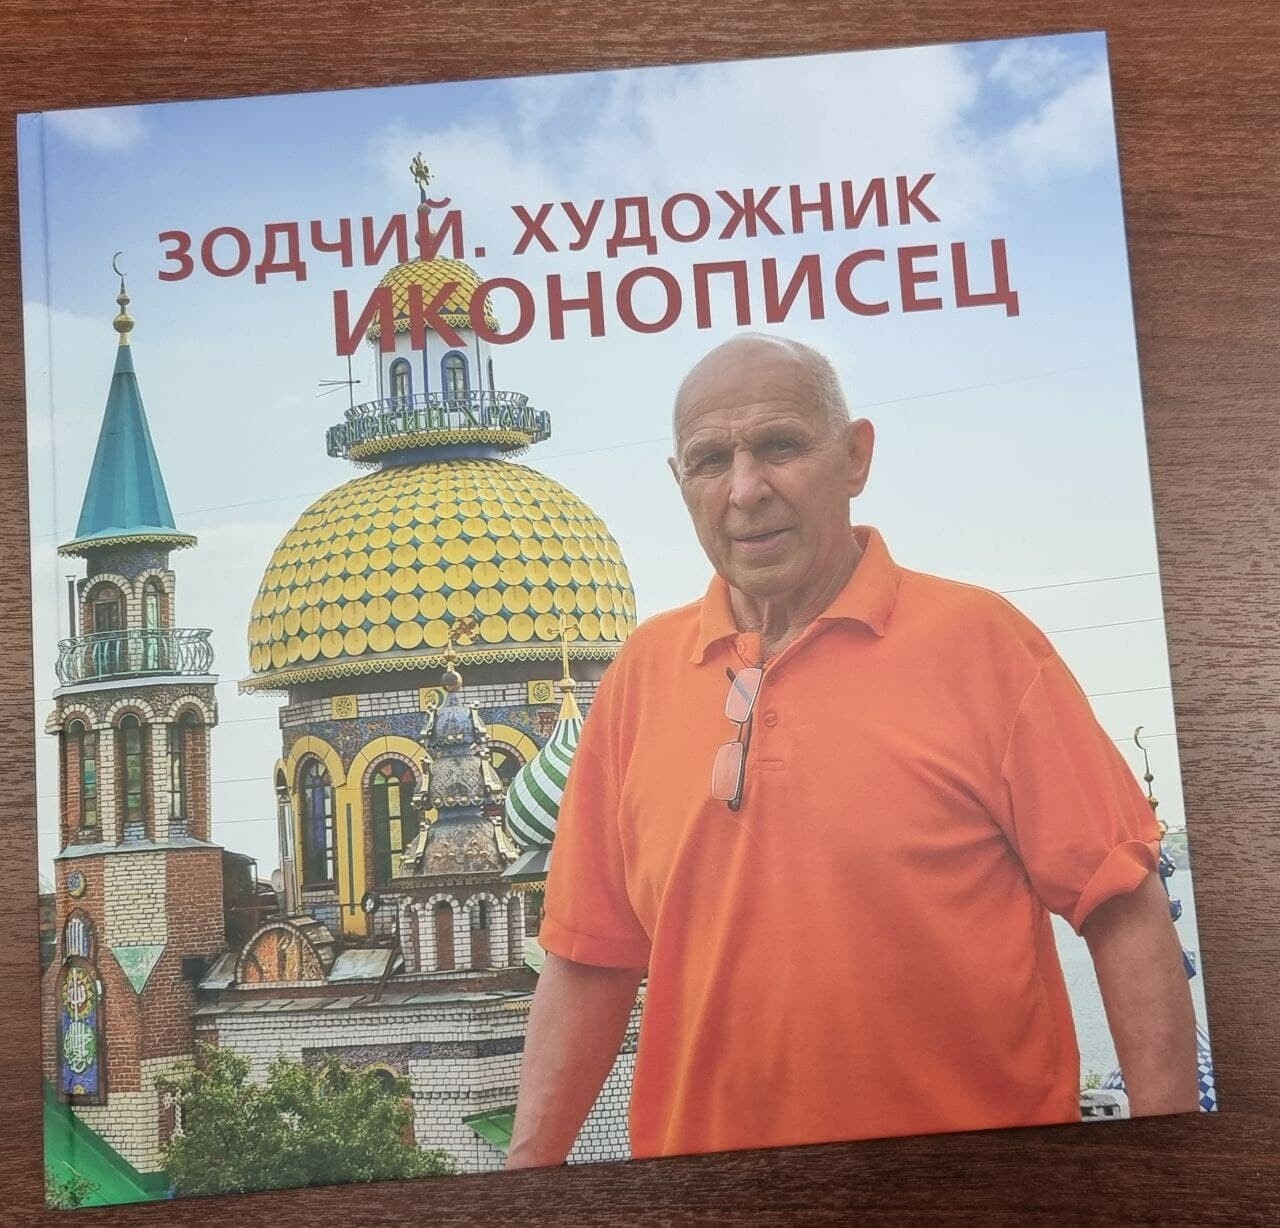 Брат-соратник строителя Храма Всех Религий Ильгиз Ханов издал автобиографический каталог